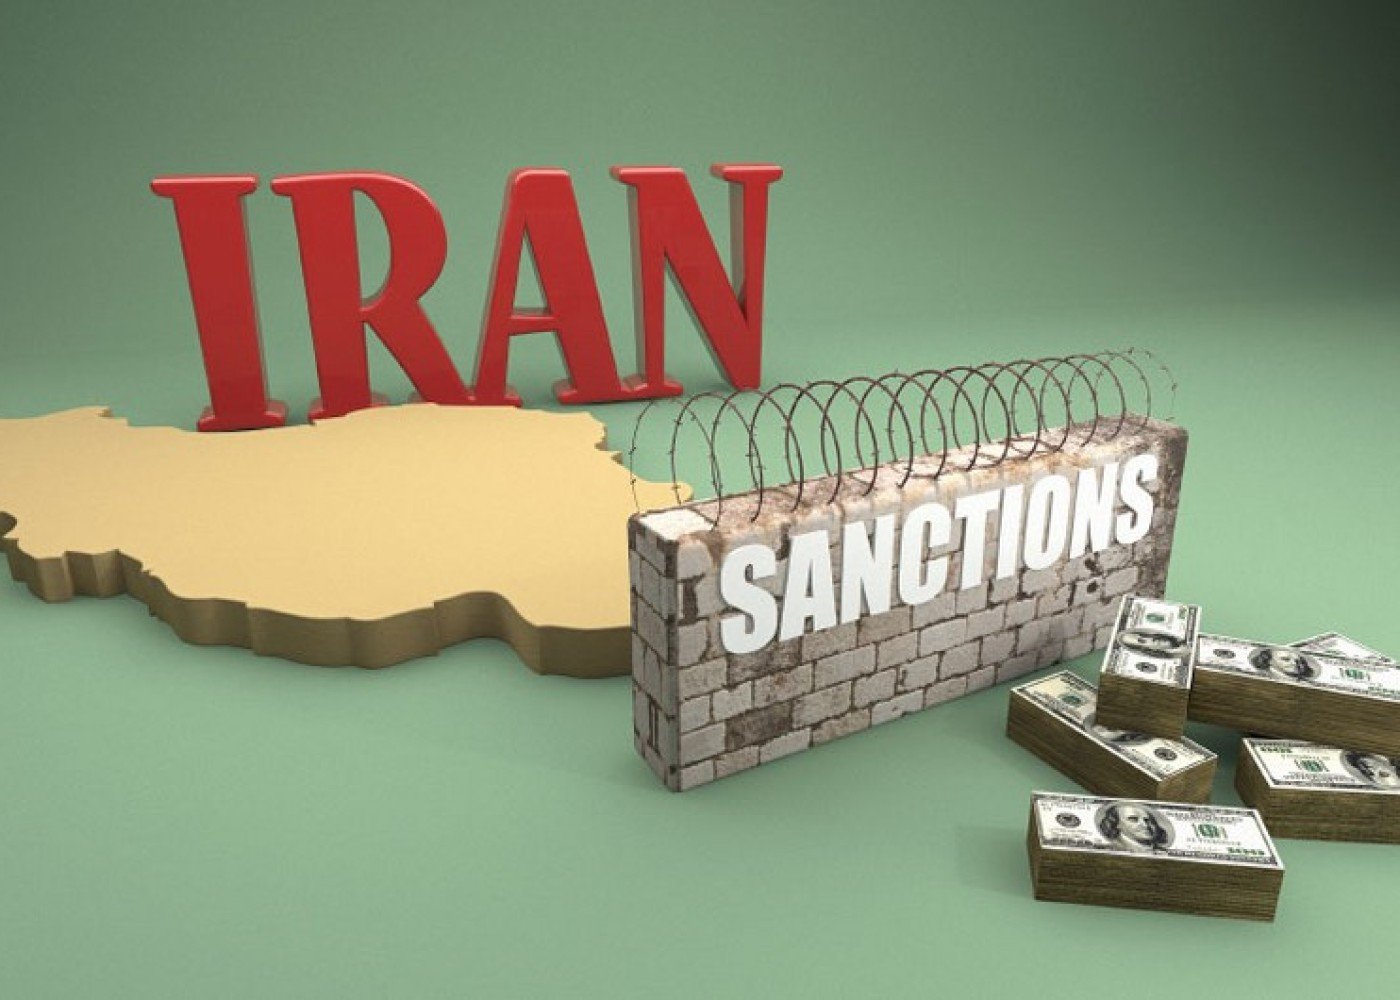 İrana qarşı sanksiyalar GENİŞLƏNDİRİLDİ